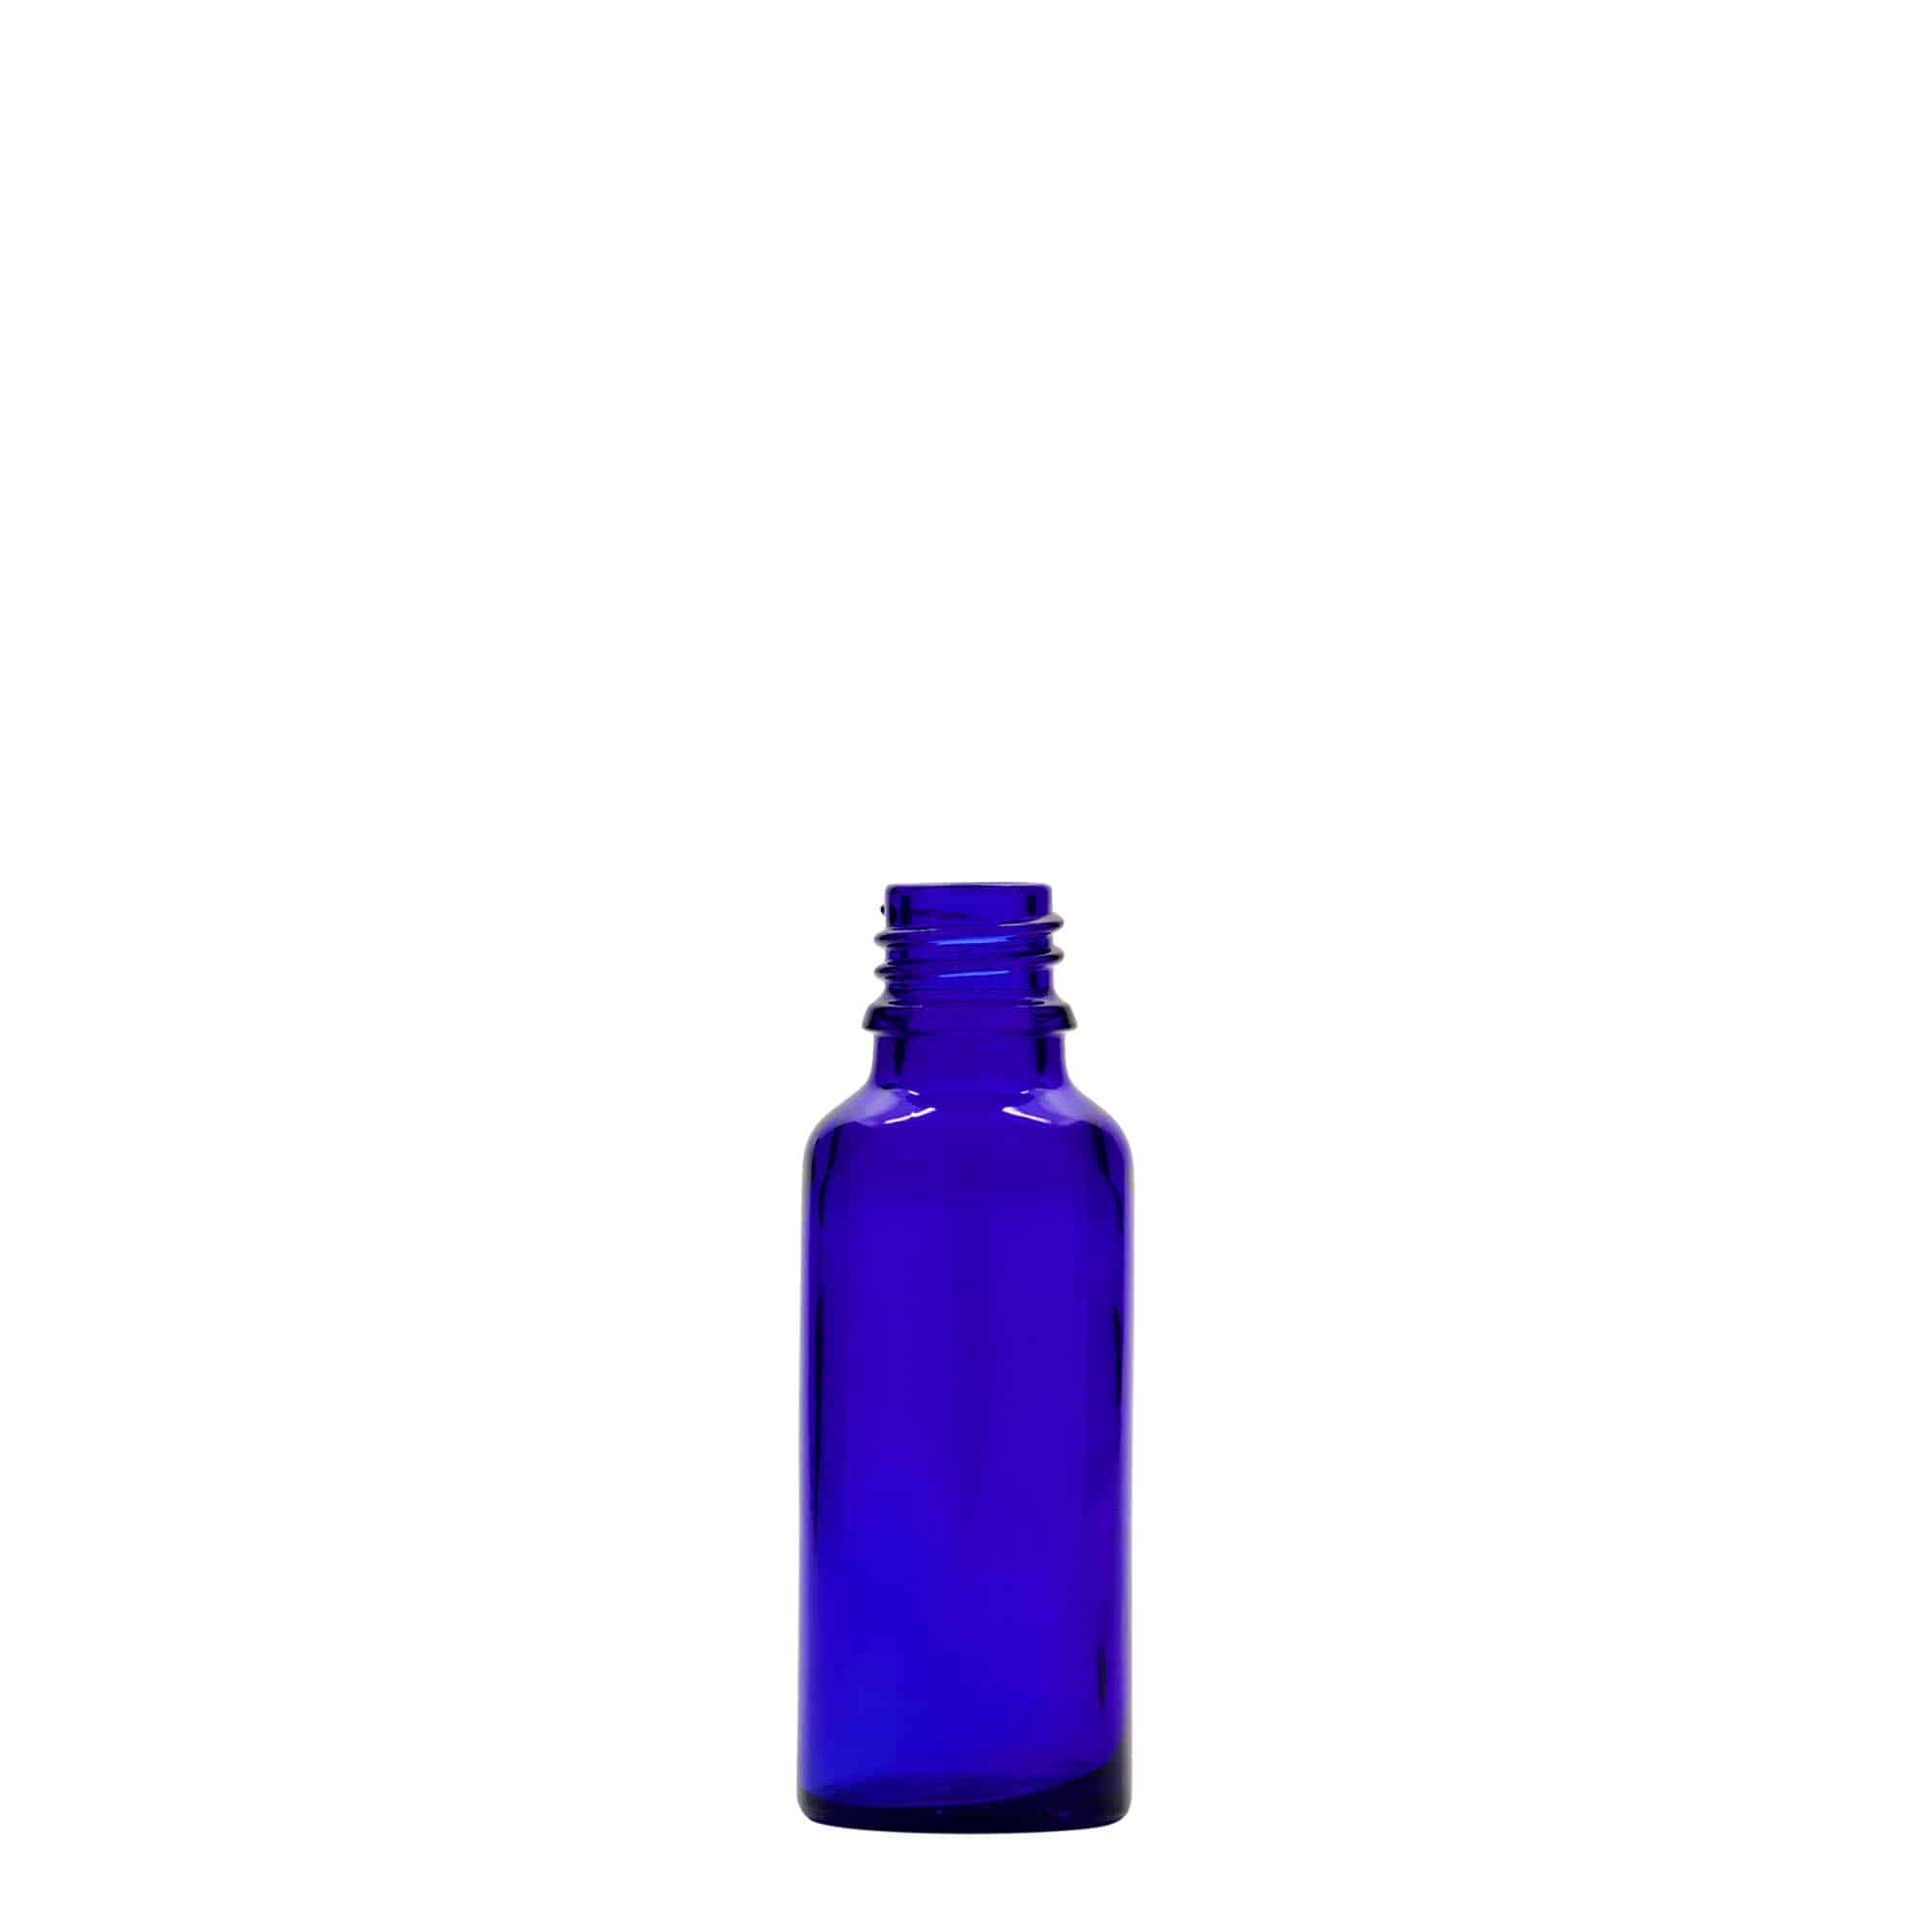 30 ml medicinflaske, glas, kongeblå, åbning: DIN 18